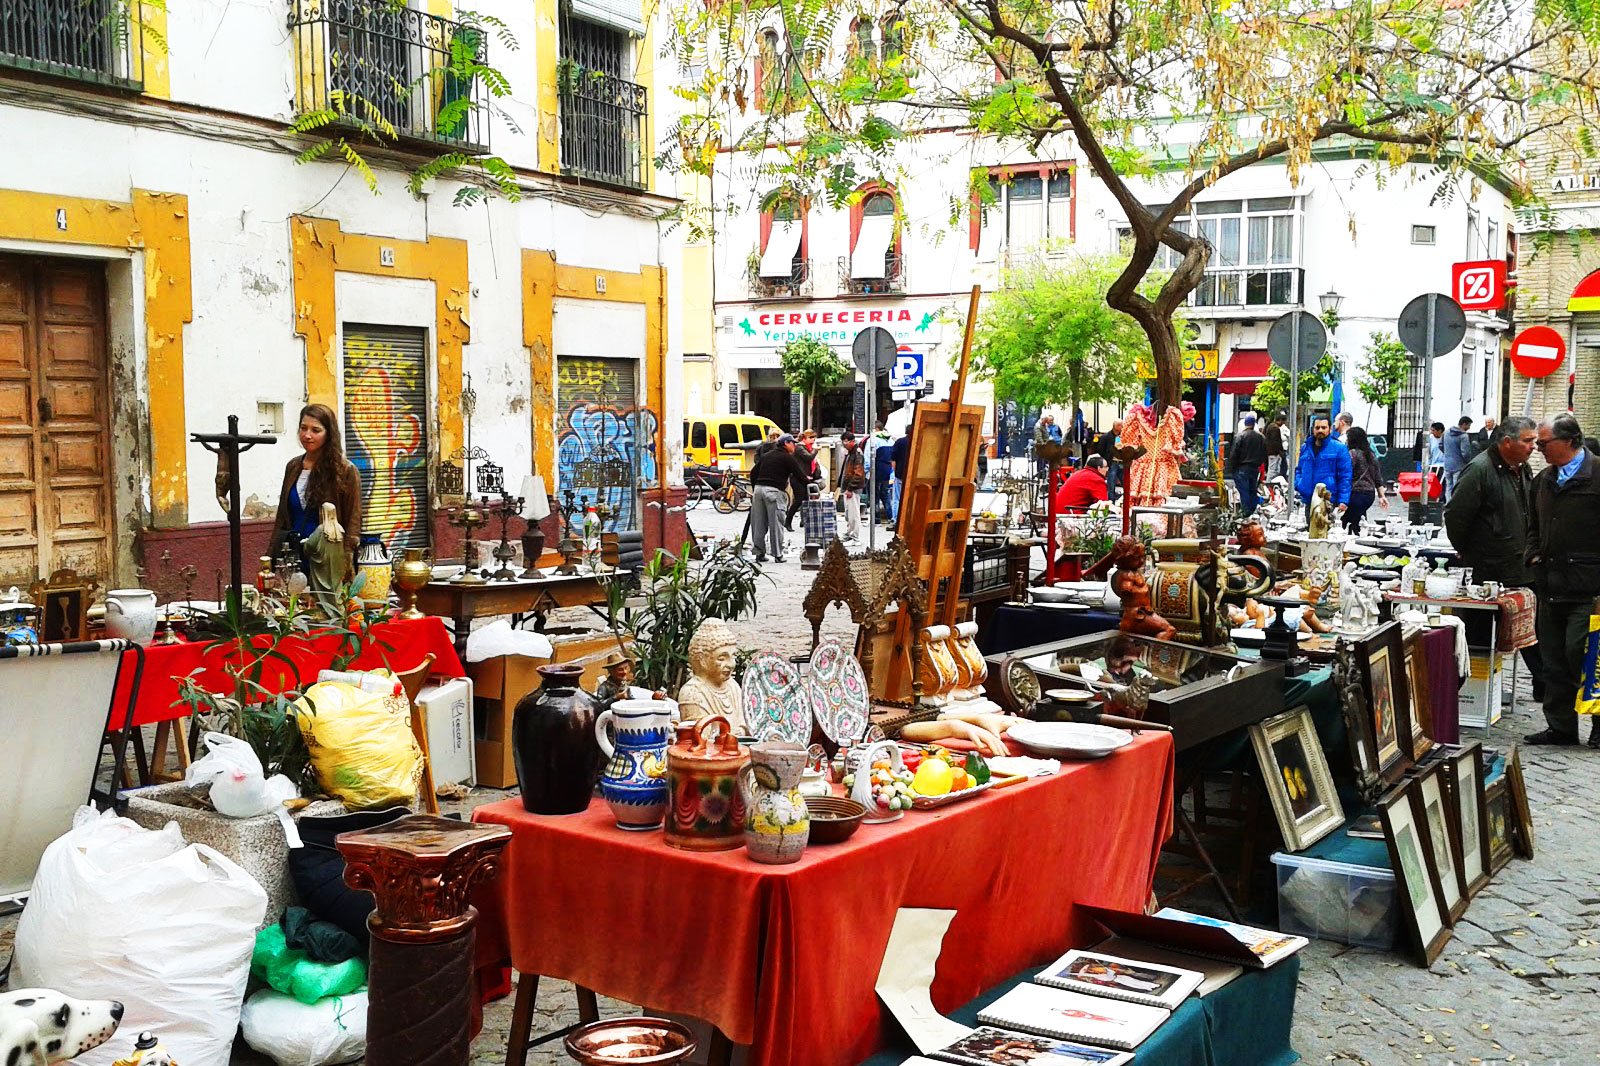 El Jueves flea market, Seville